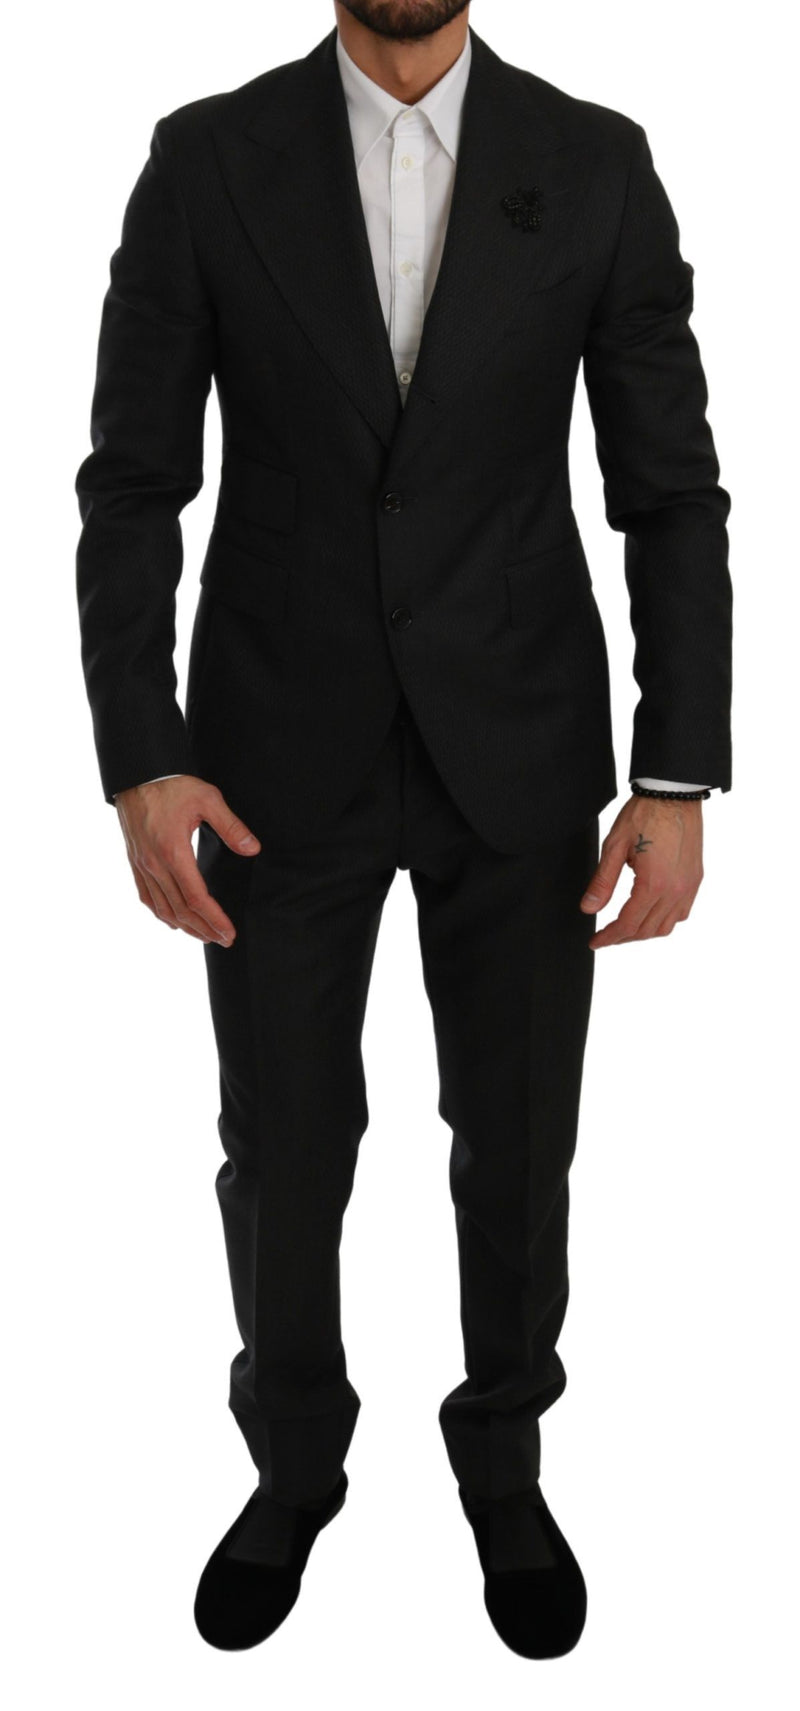 Dolce & Gabbana Elegant Black Crystal-Embellished Two-Piece Men's Suit